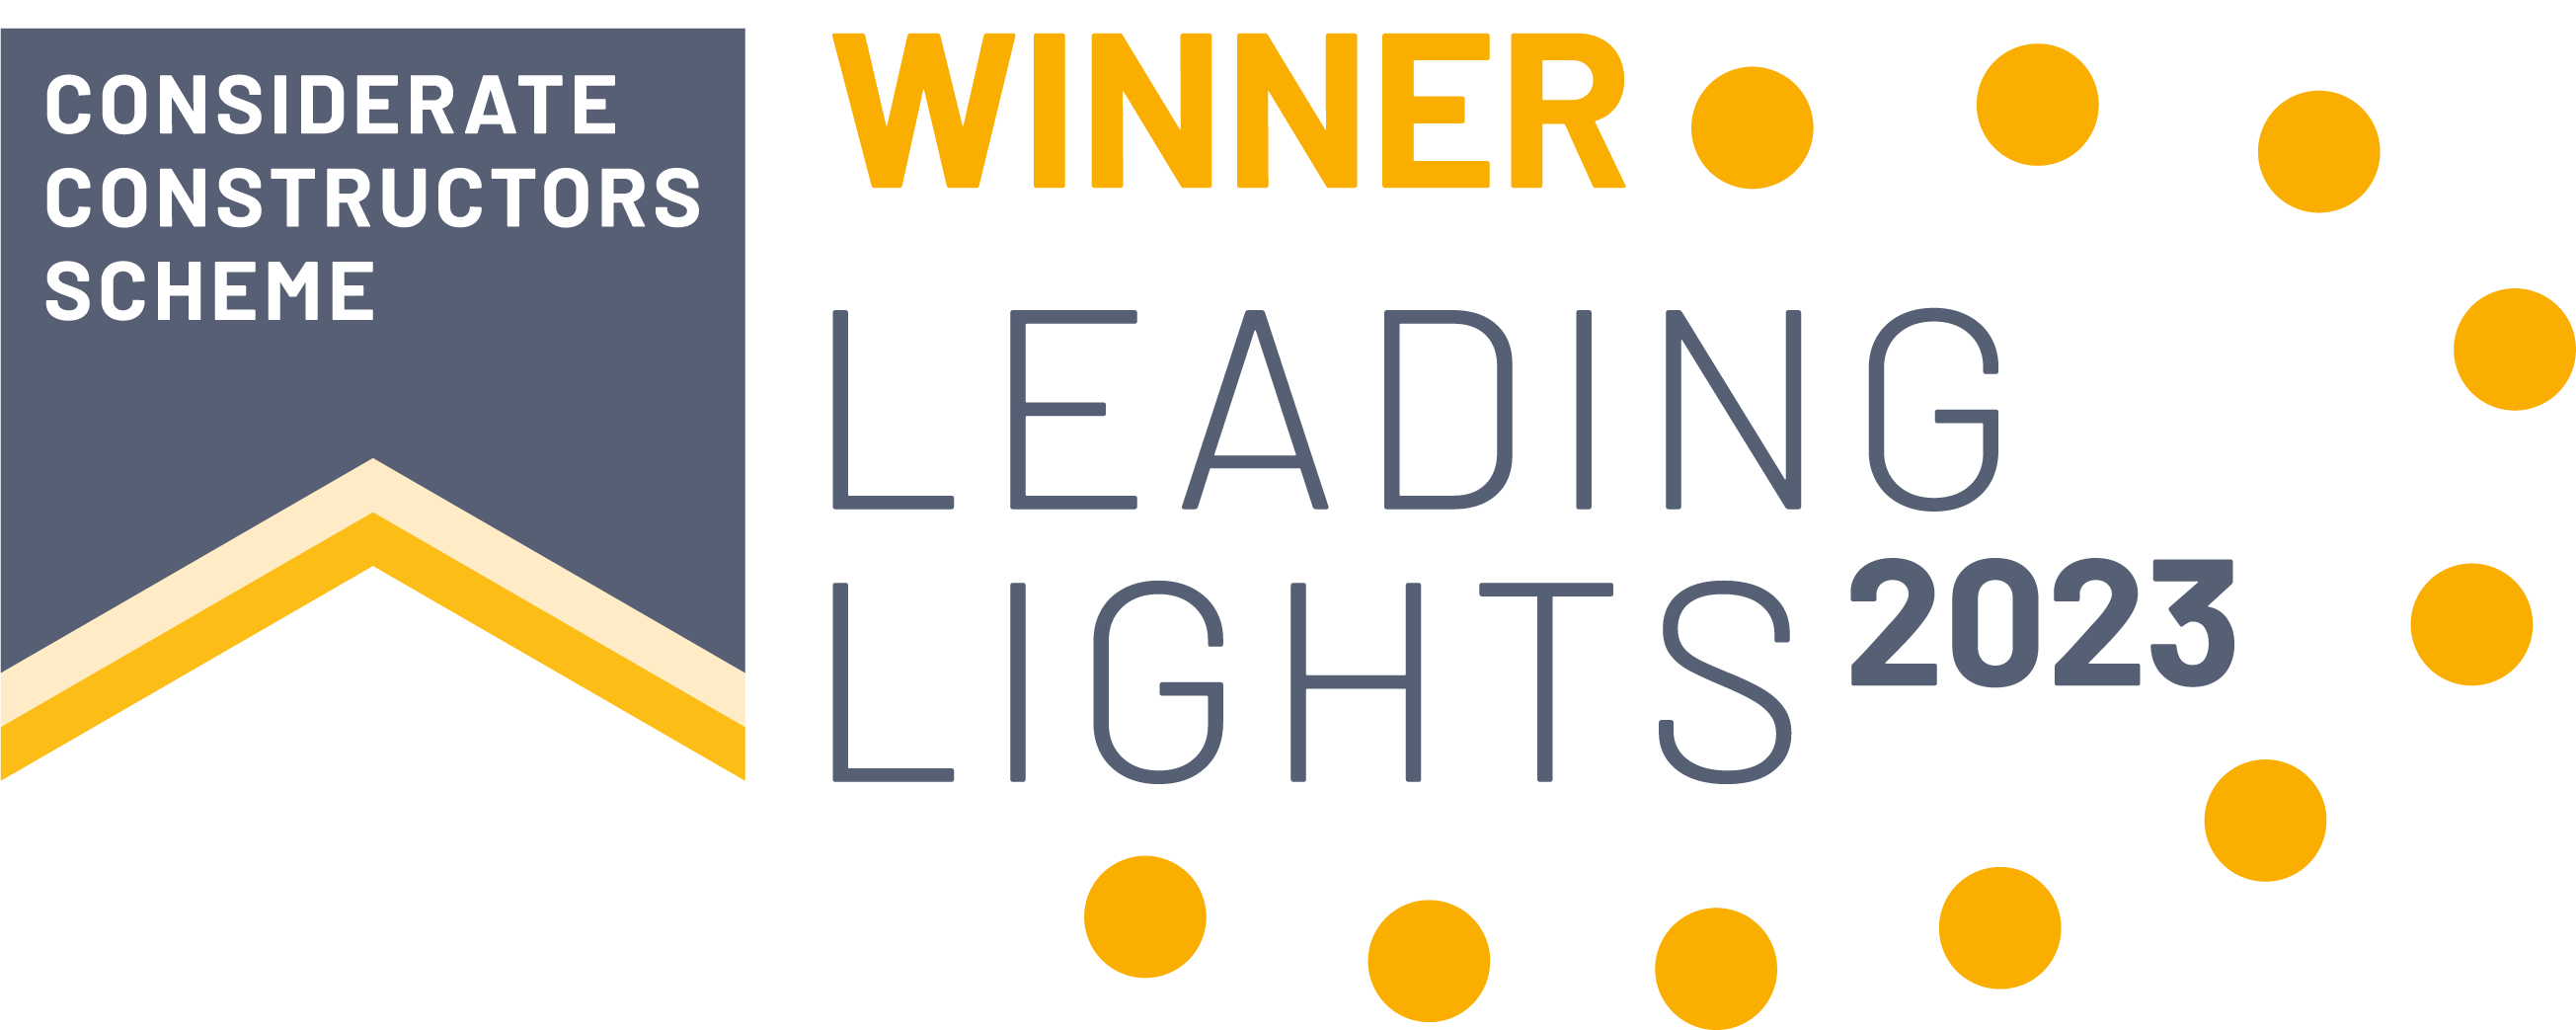 Leading Lights award winner